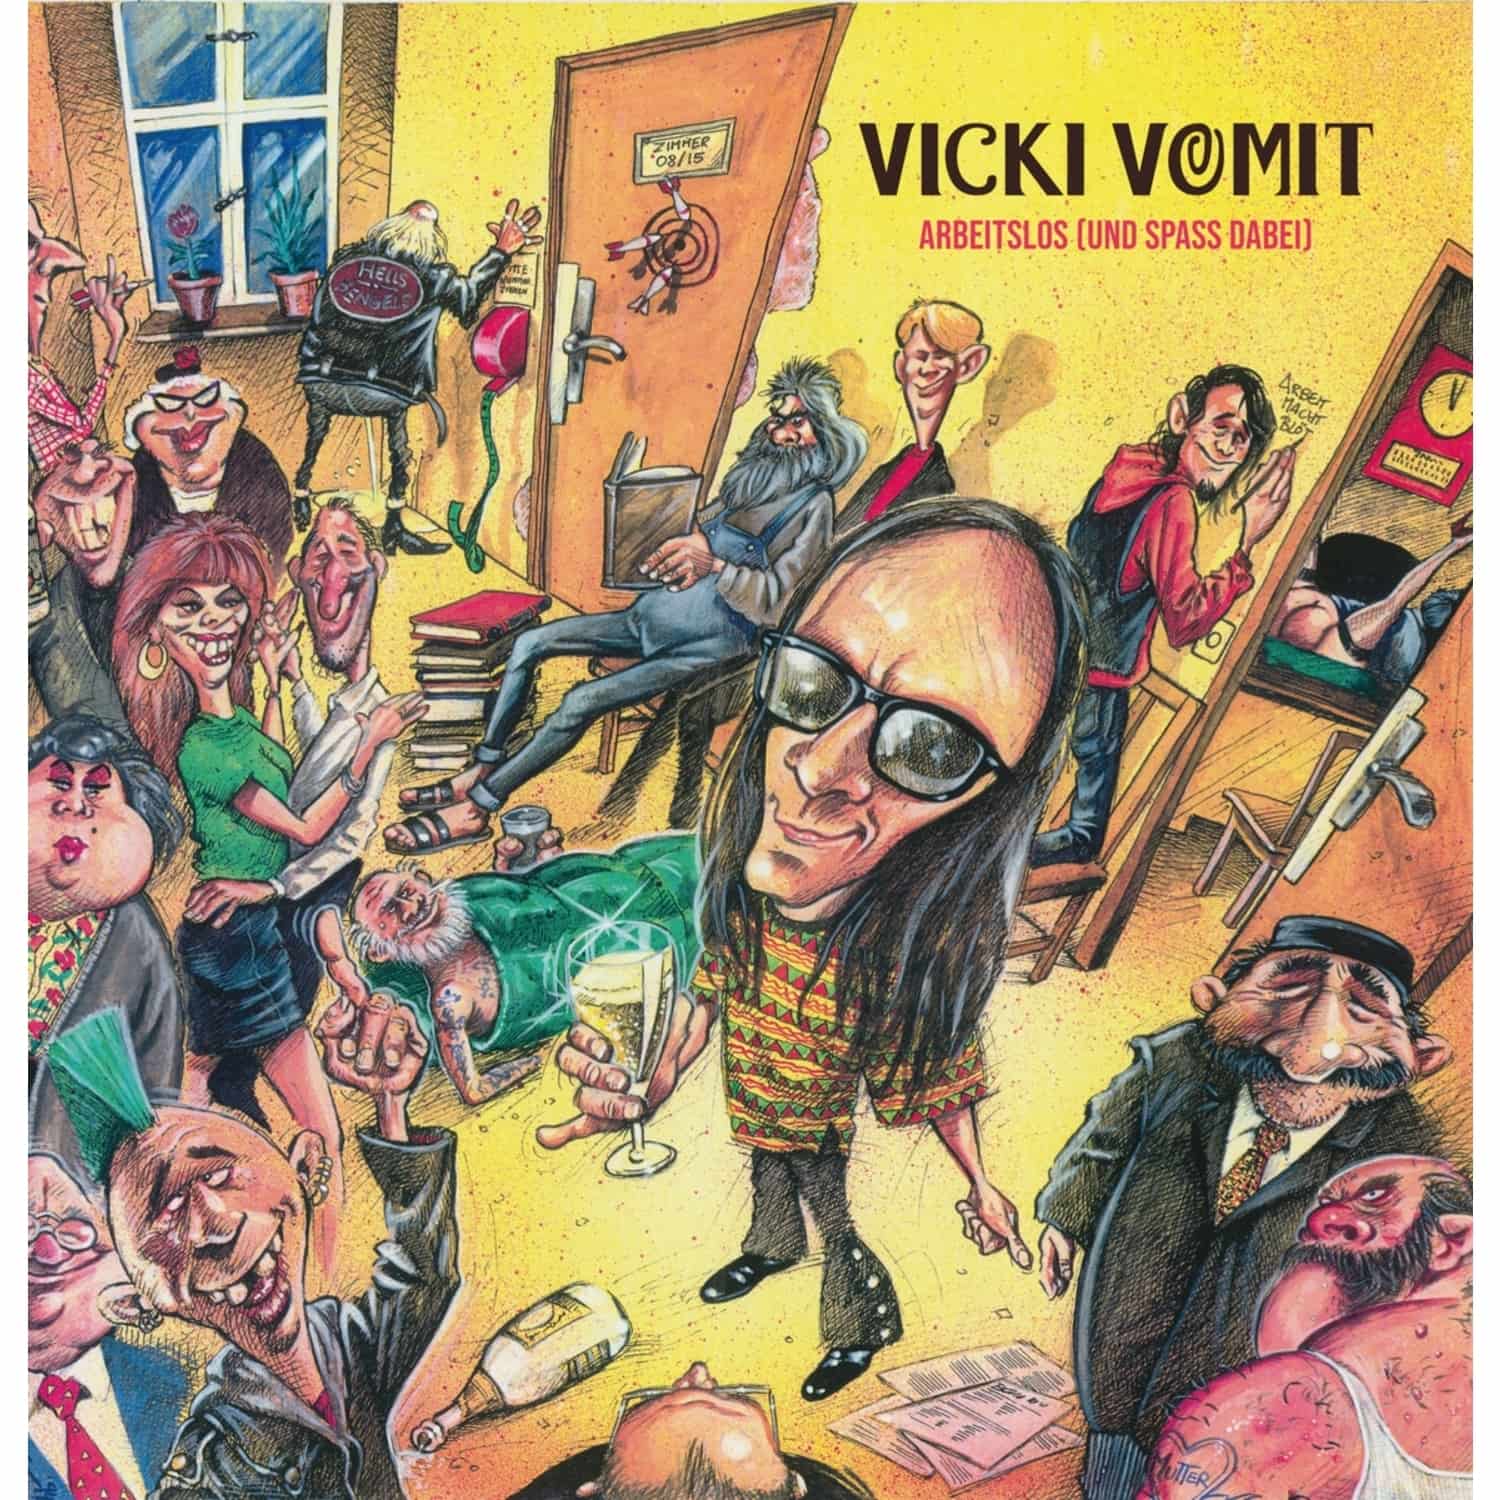  Vicki Vomit - ARBEITSLOS UND SPASS DABEI 